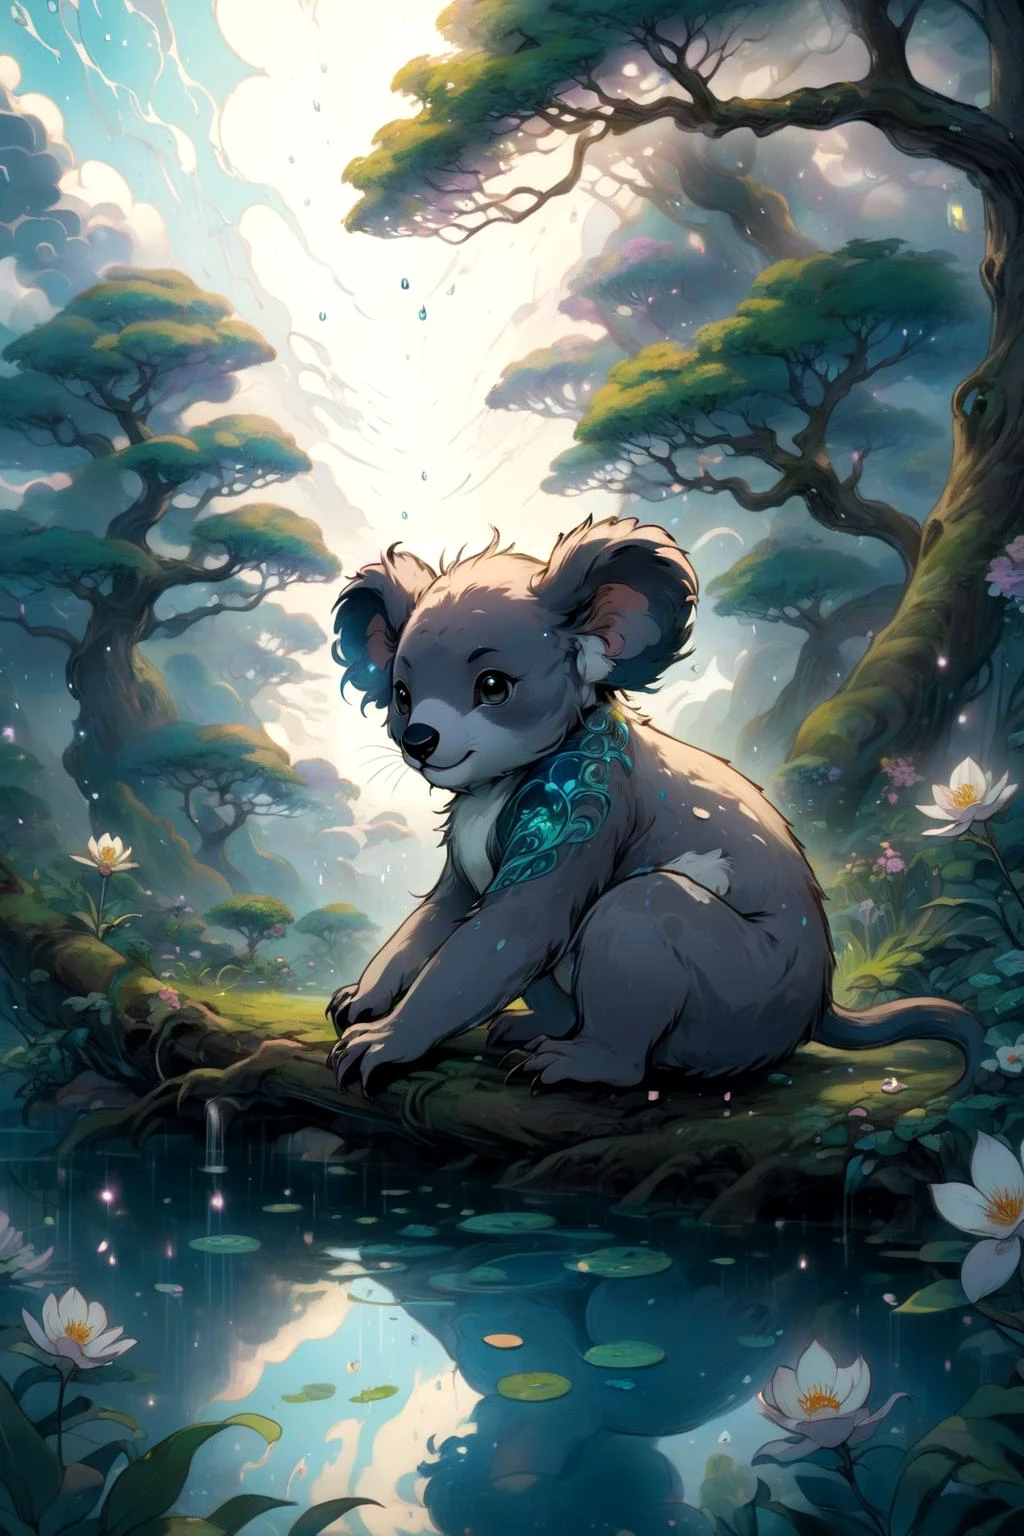 misterioso, koala, En un reino de serenidad encantada, Un jardín de tranquilidad florece, su belleza zen que induce una sensación de paz interior, Ser refractado y dispersado por gotas de lluvia hechas de nubes míticas 